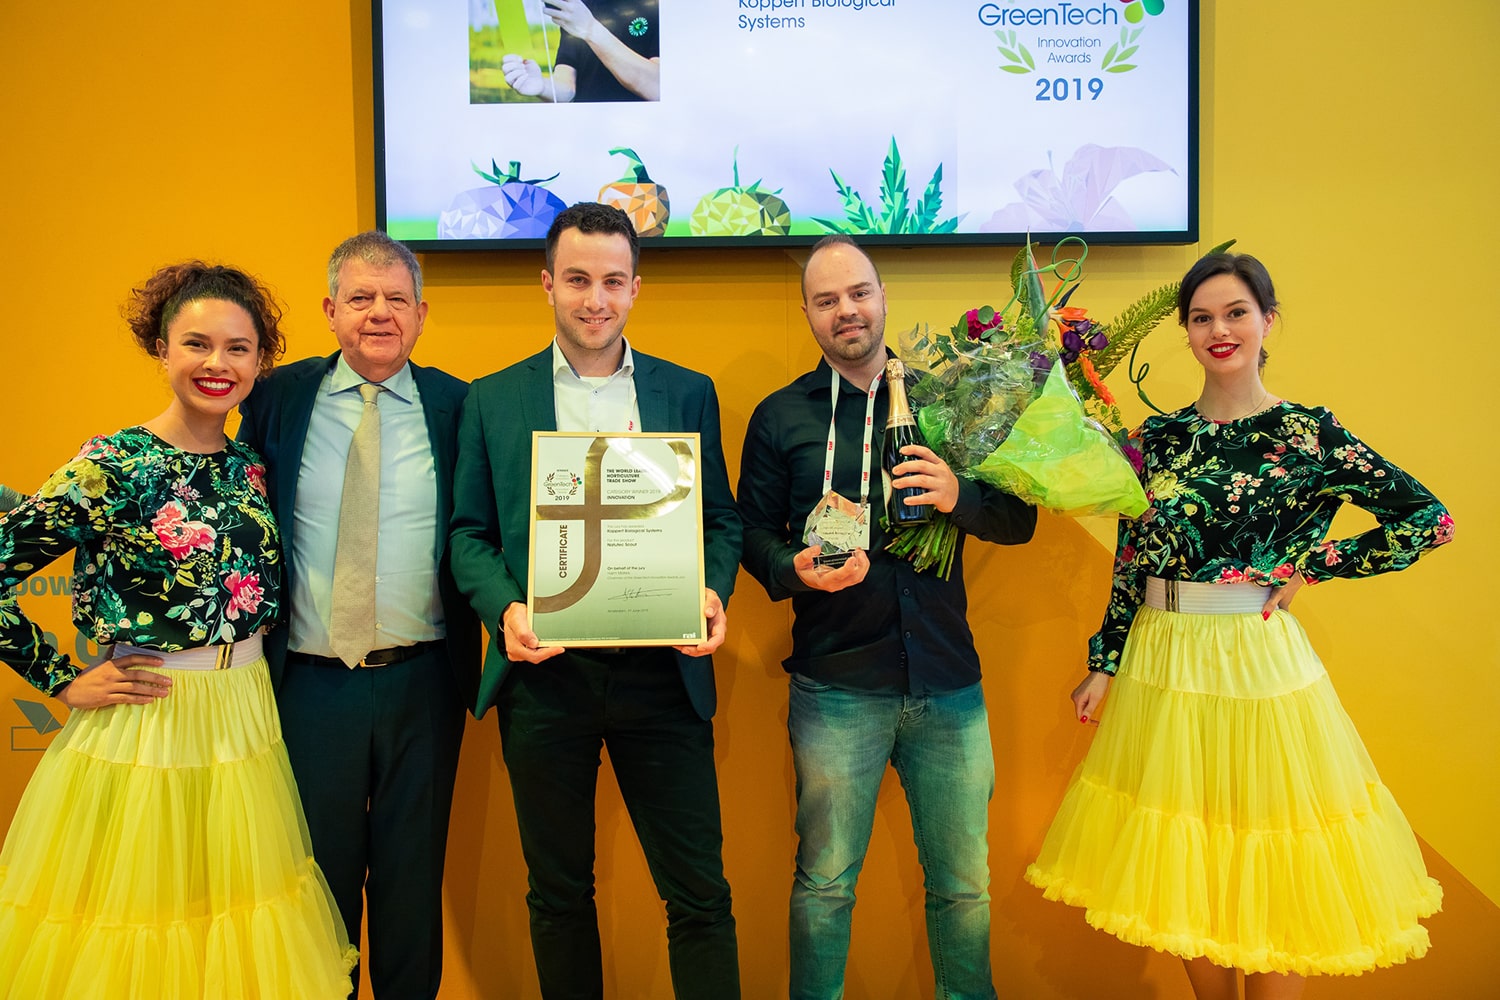 greentech-2019-innovation-awards-winners-announced